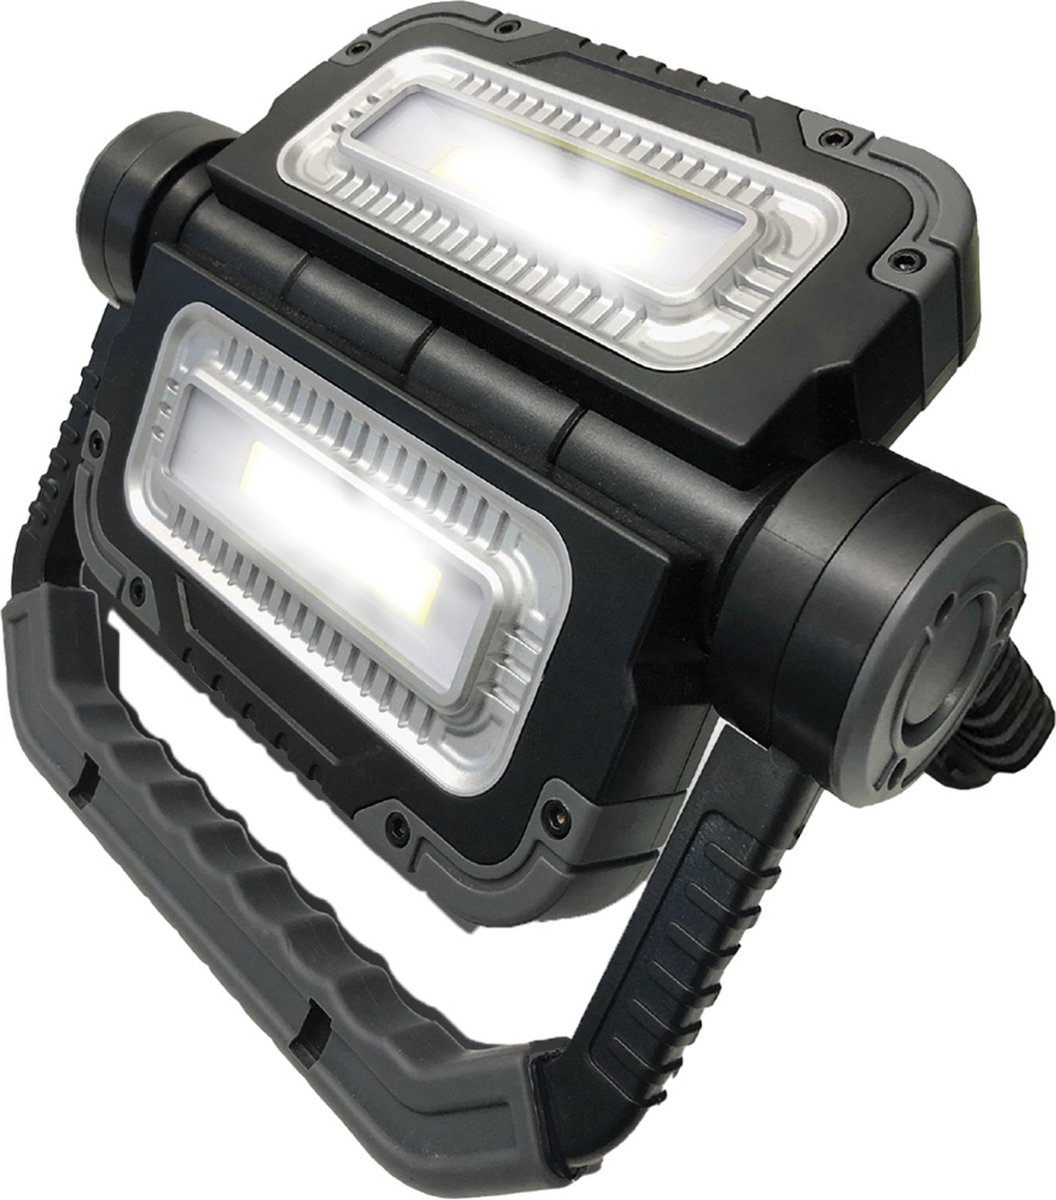 Worklight 360 Multi directionele werklamp – Compact en draadloos design – COB technologie